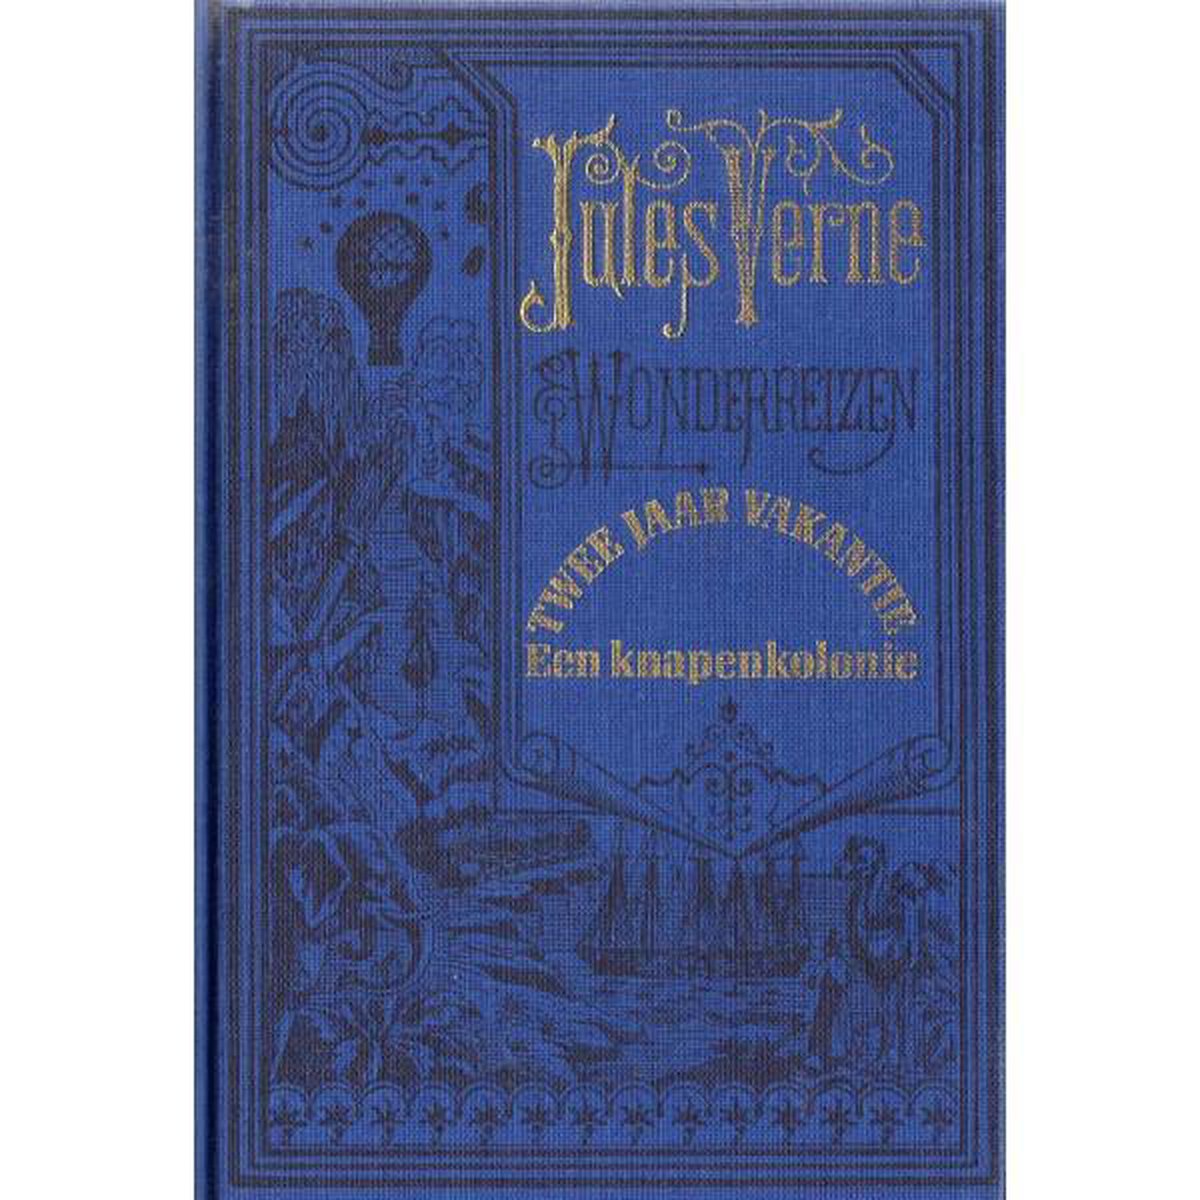 Jules Vernes Wonderreizen - Twee Jaar Vakantie - Een knapenkolonie